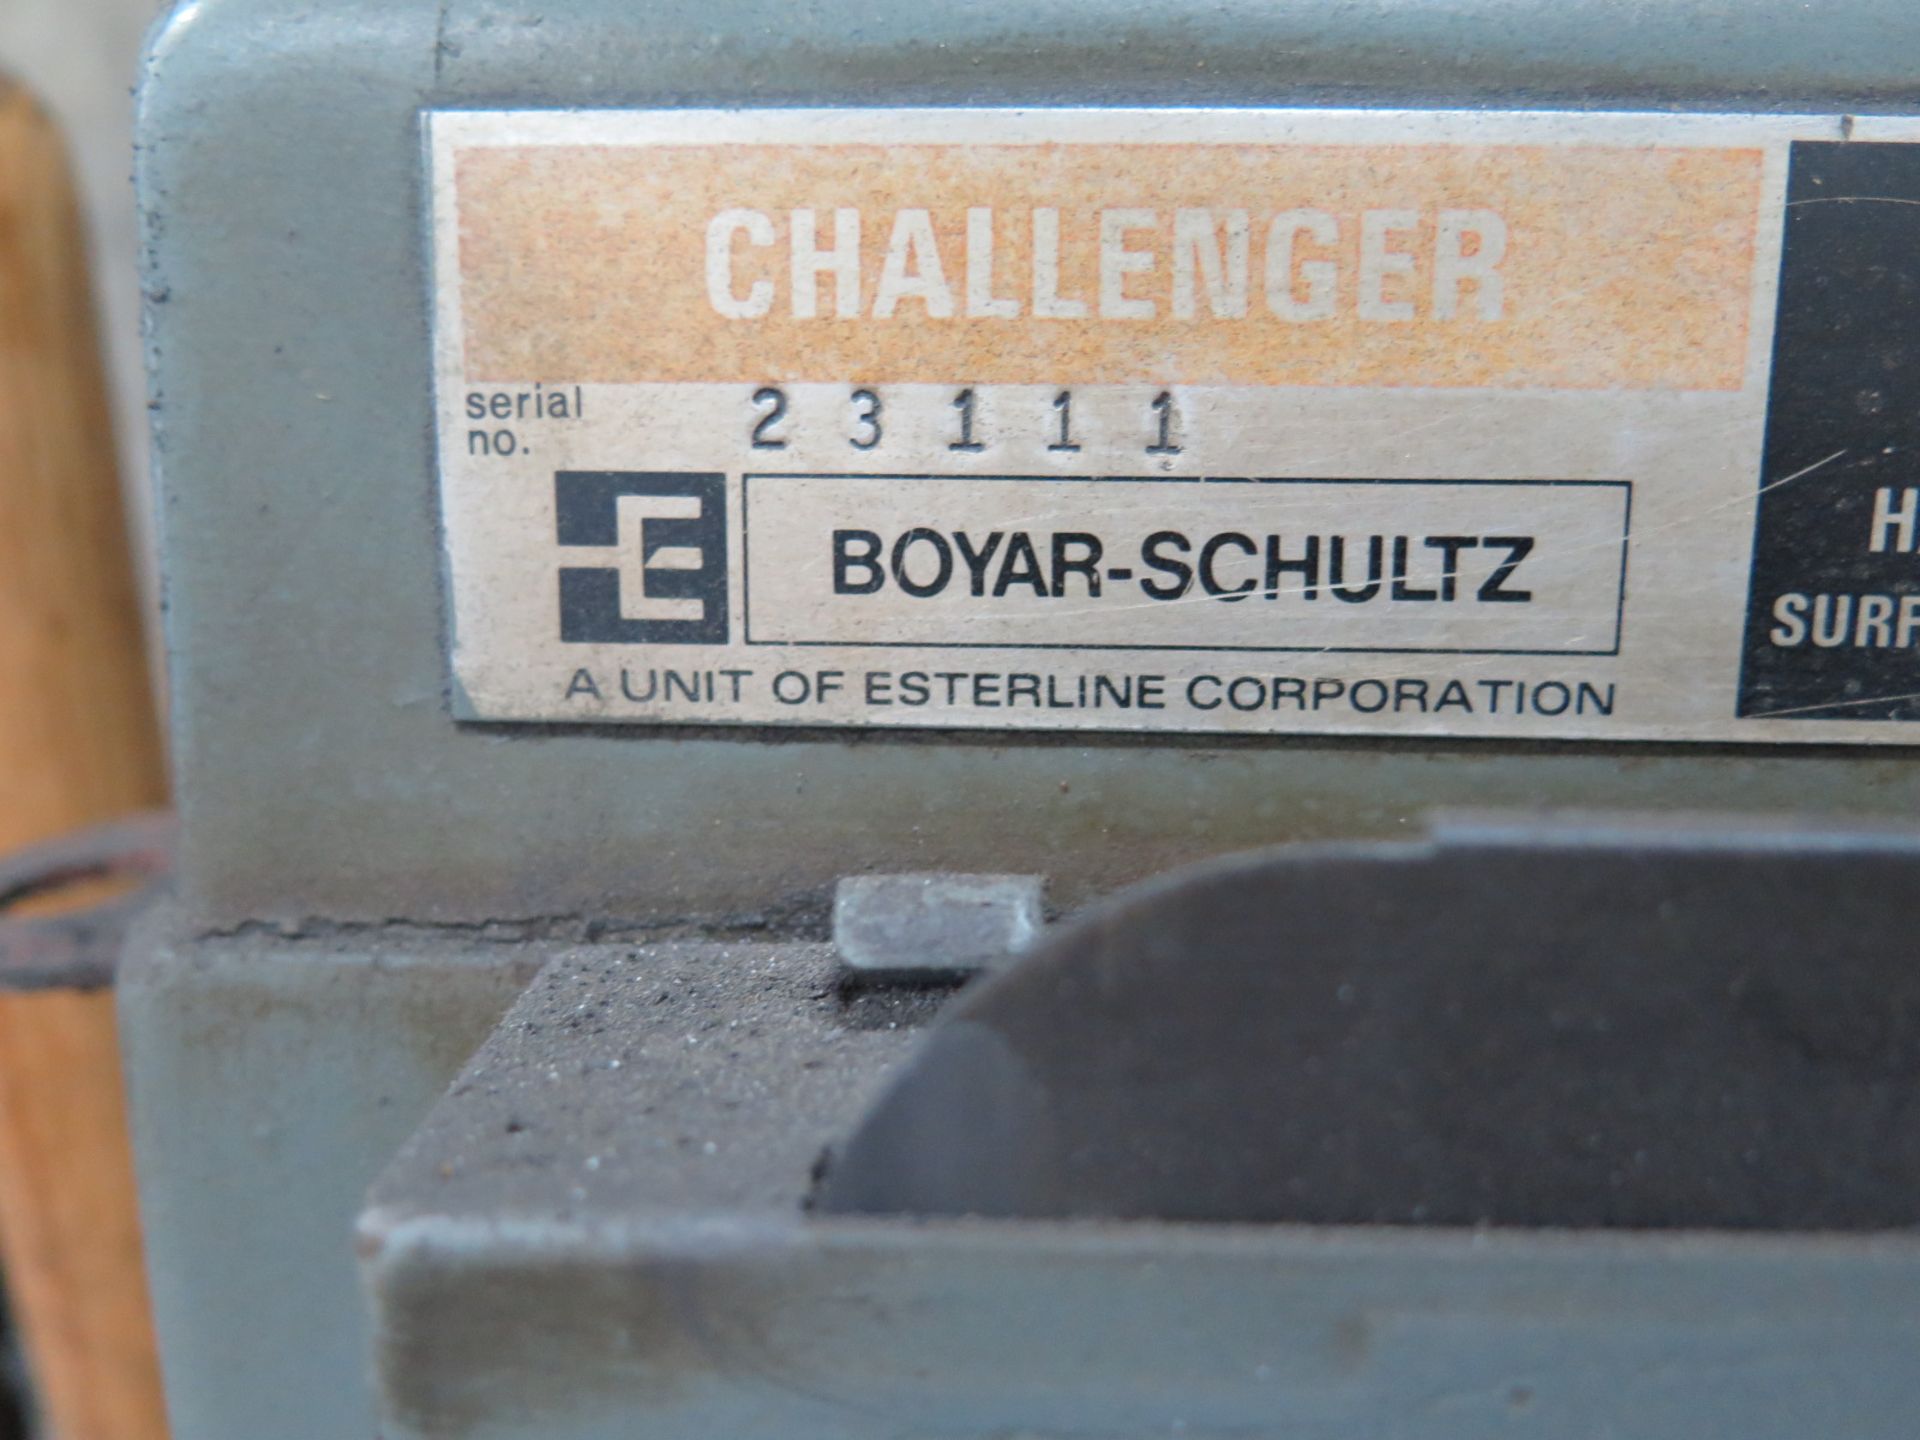 Boyar Schultz Challenger H612 6â€ x 12â€ Surface Grinder s/n 23111 w/ Magnetic Chuck - Image 4 of 4